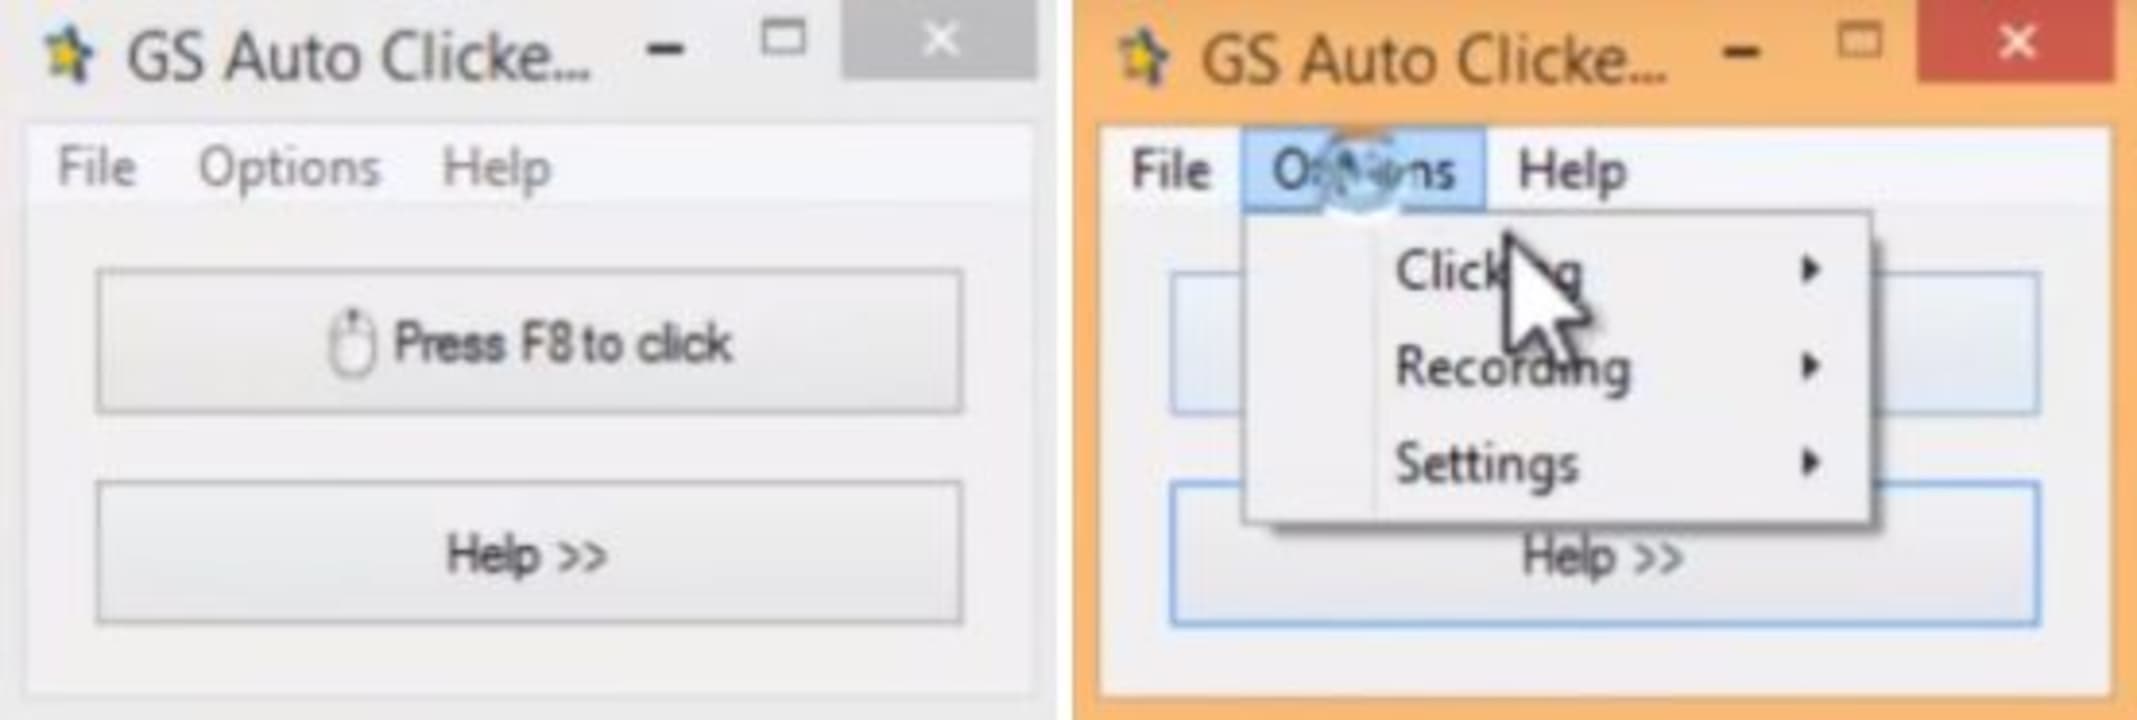 GS Auto Clicker - AutoClick